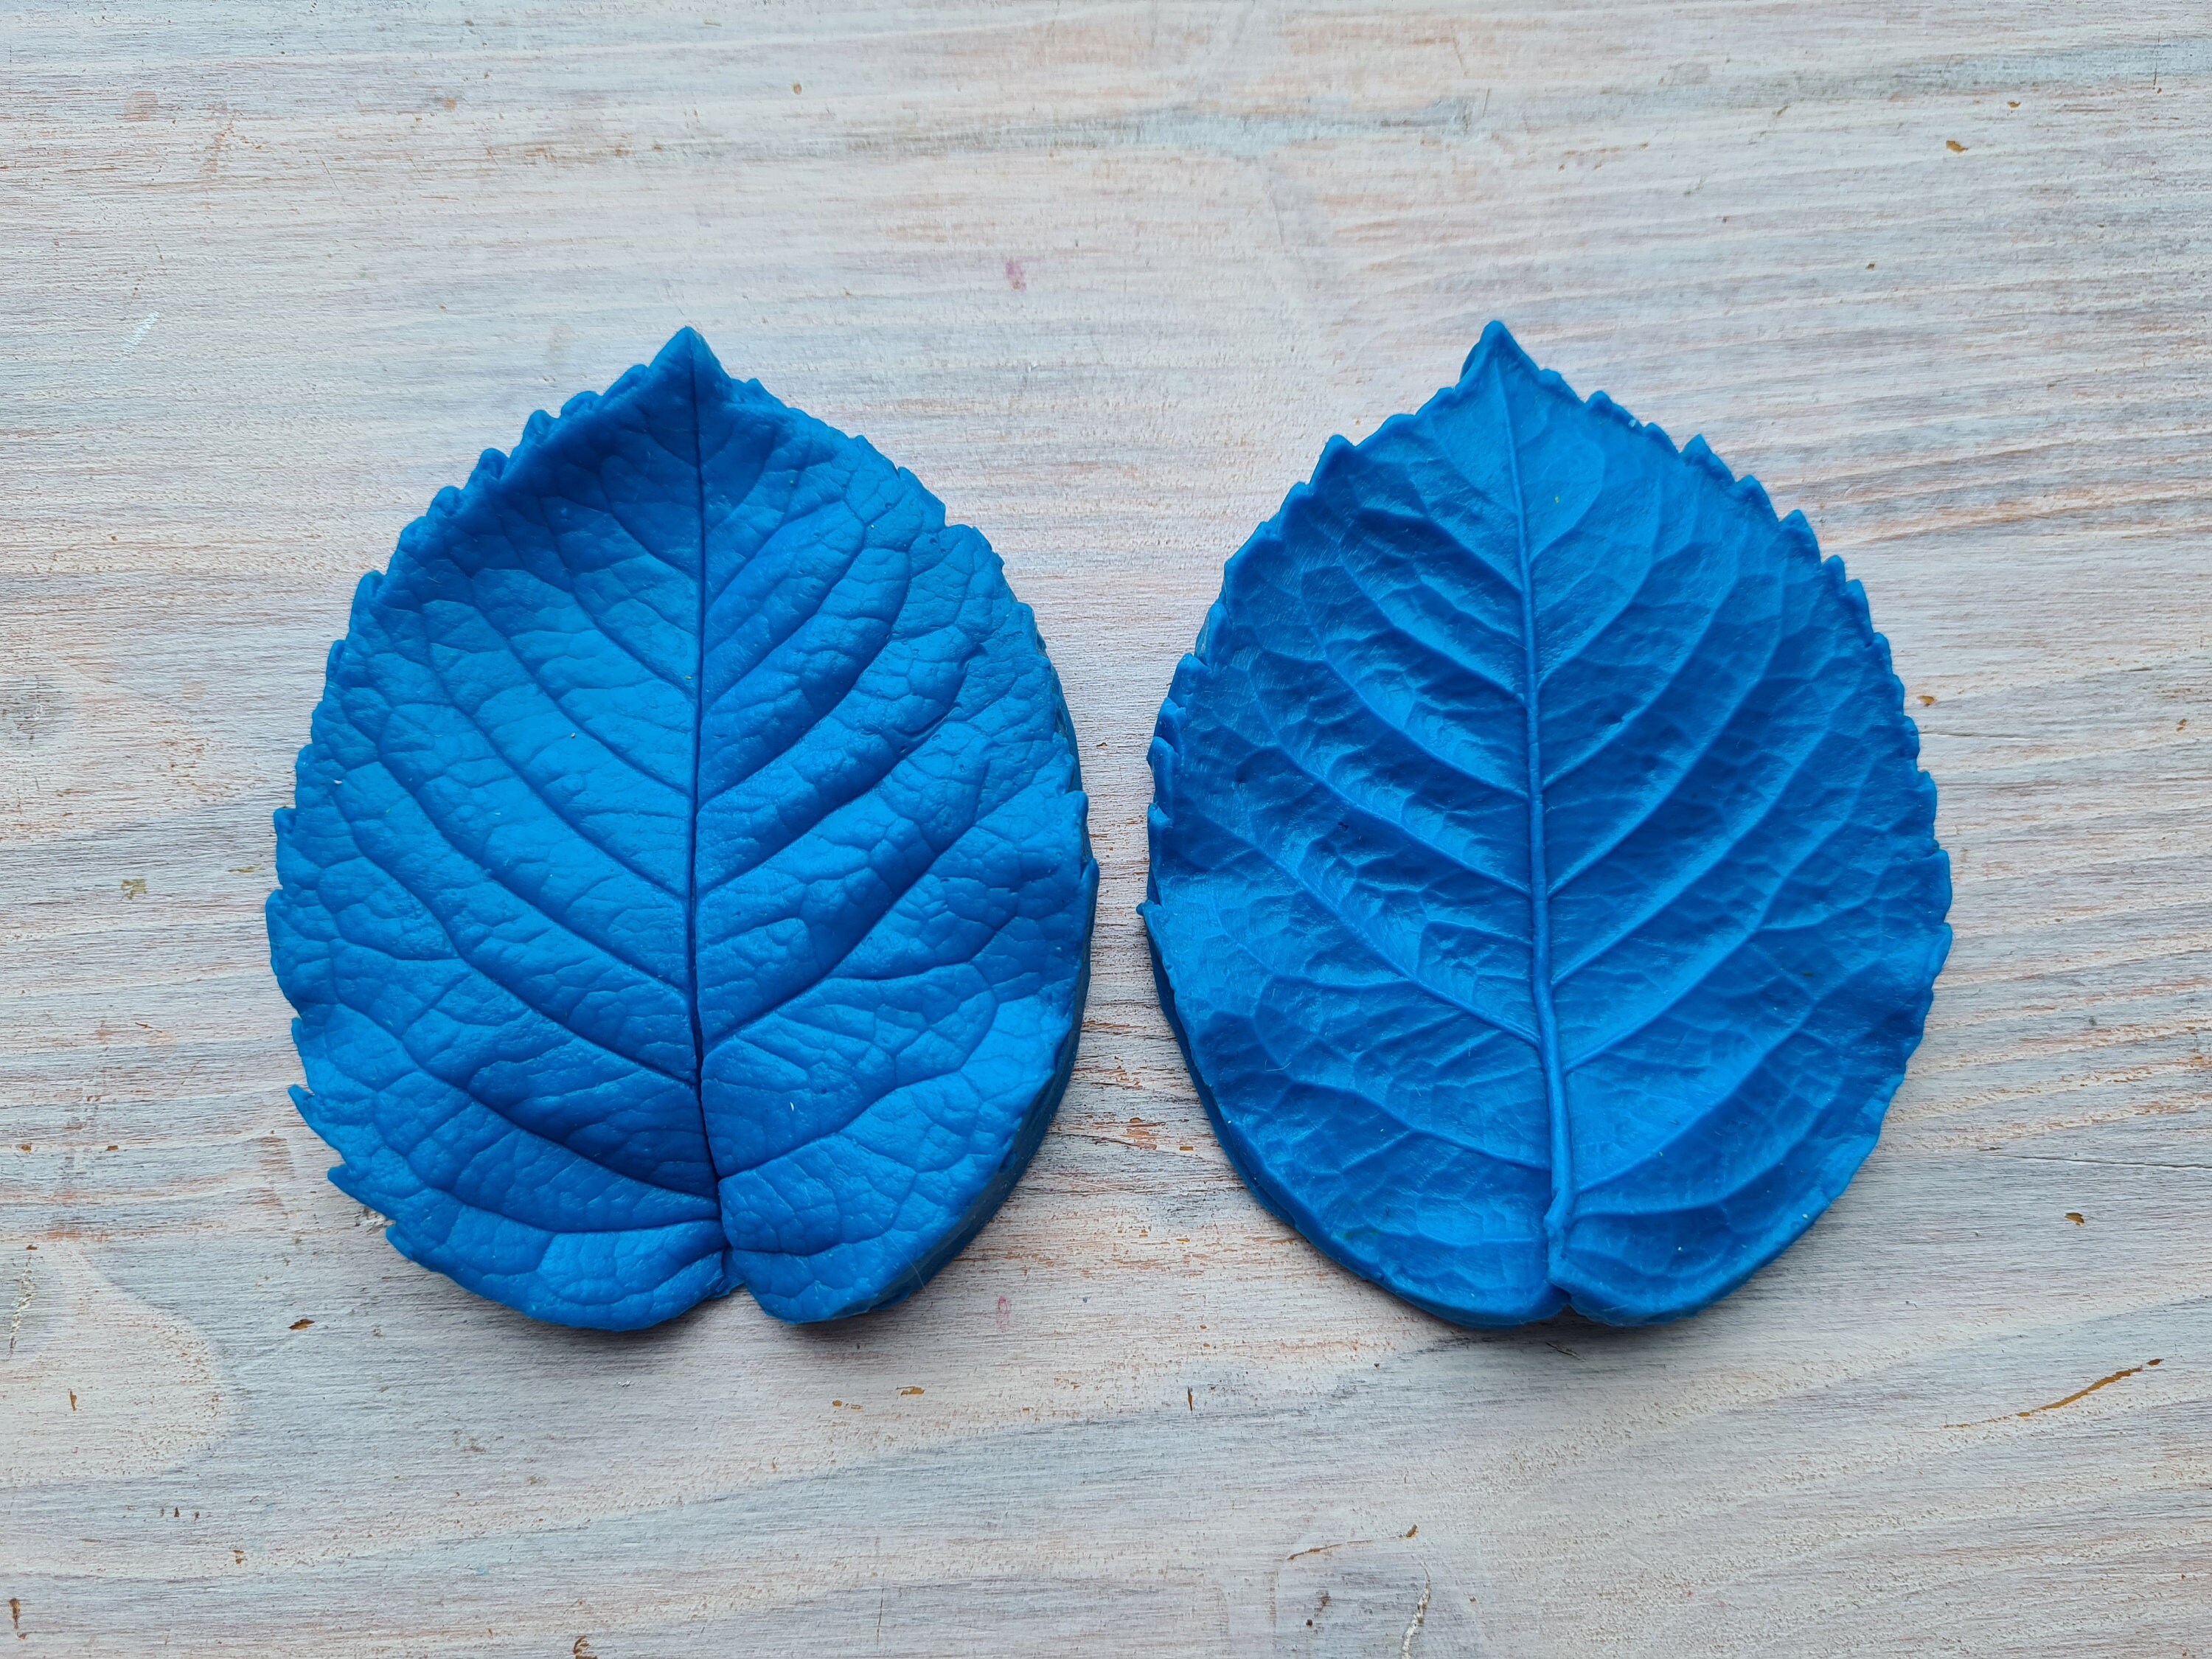 Rose leaf veiner/mold 28х21 cm (11x8,3 inches) №6 - pattern for foamir